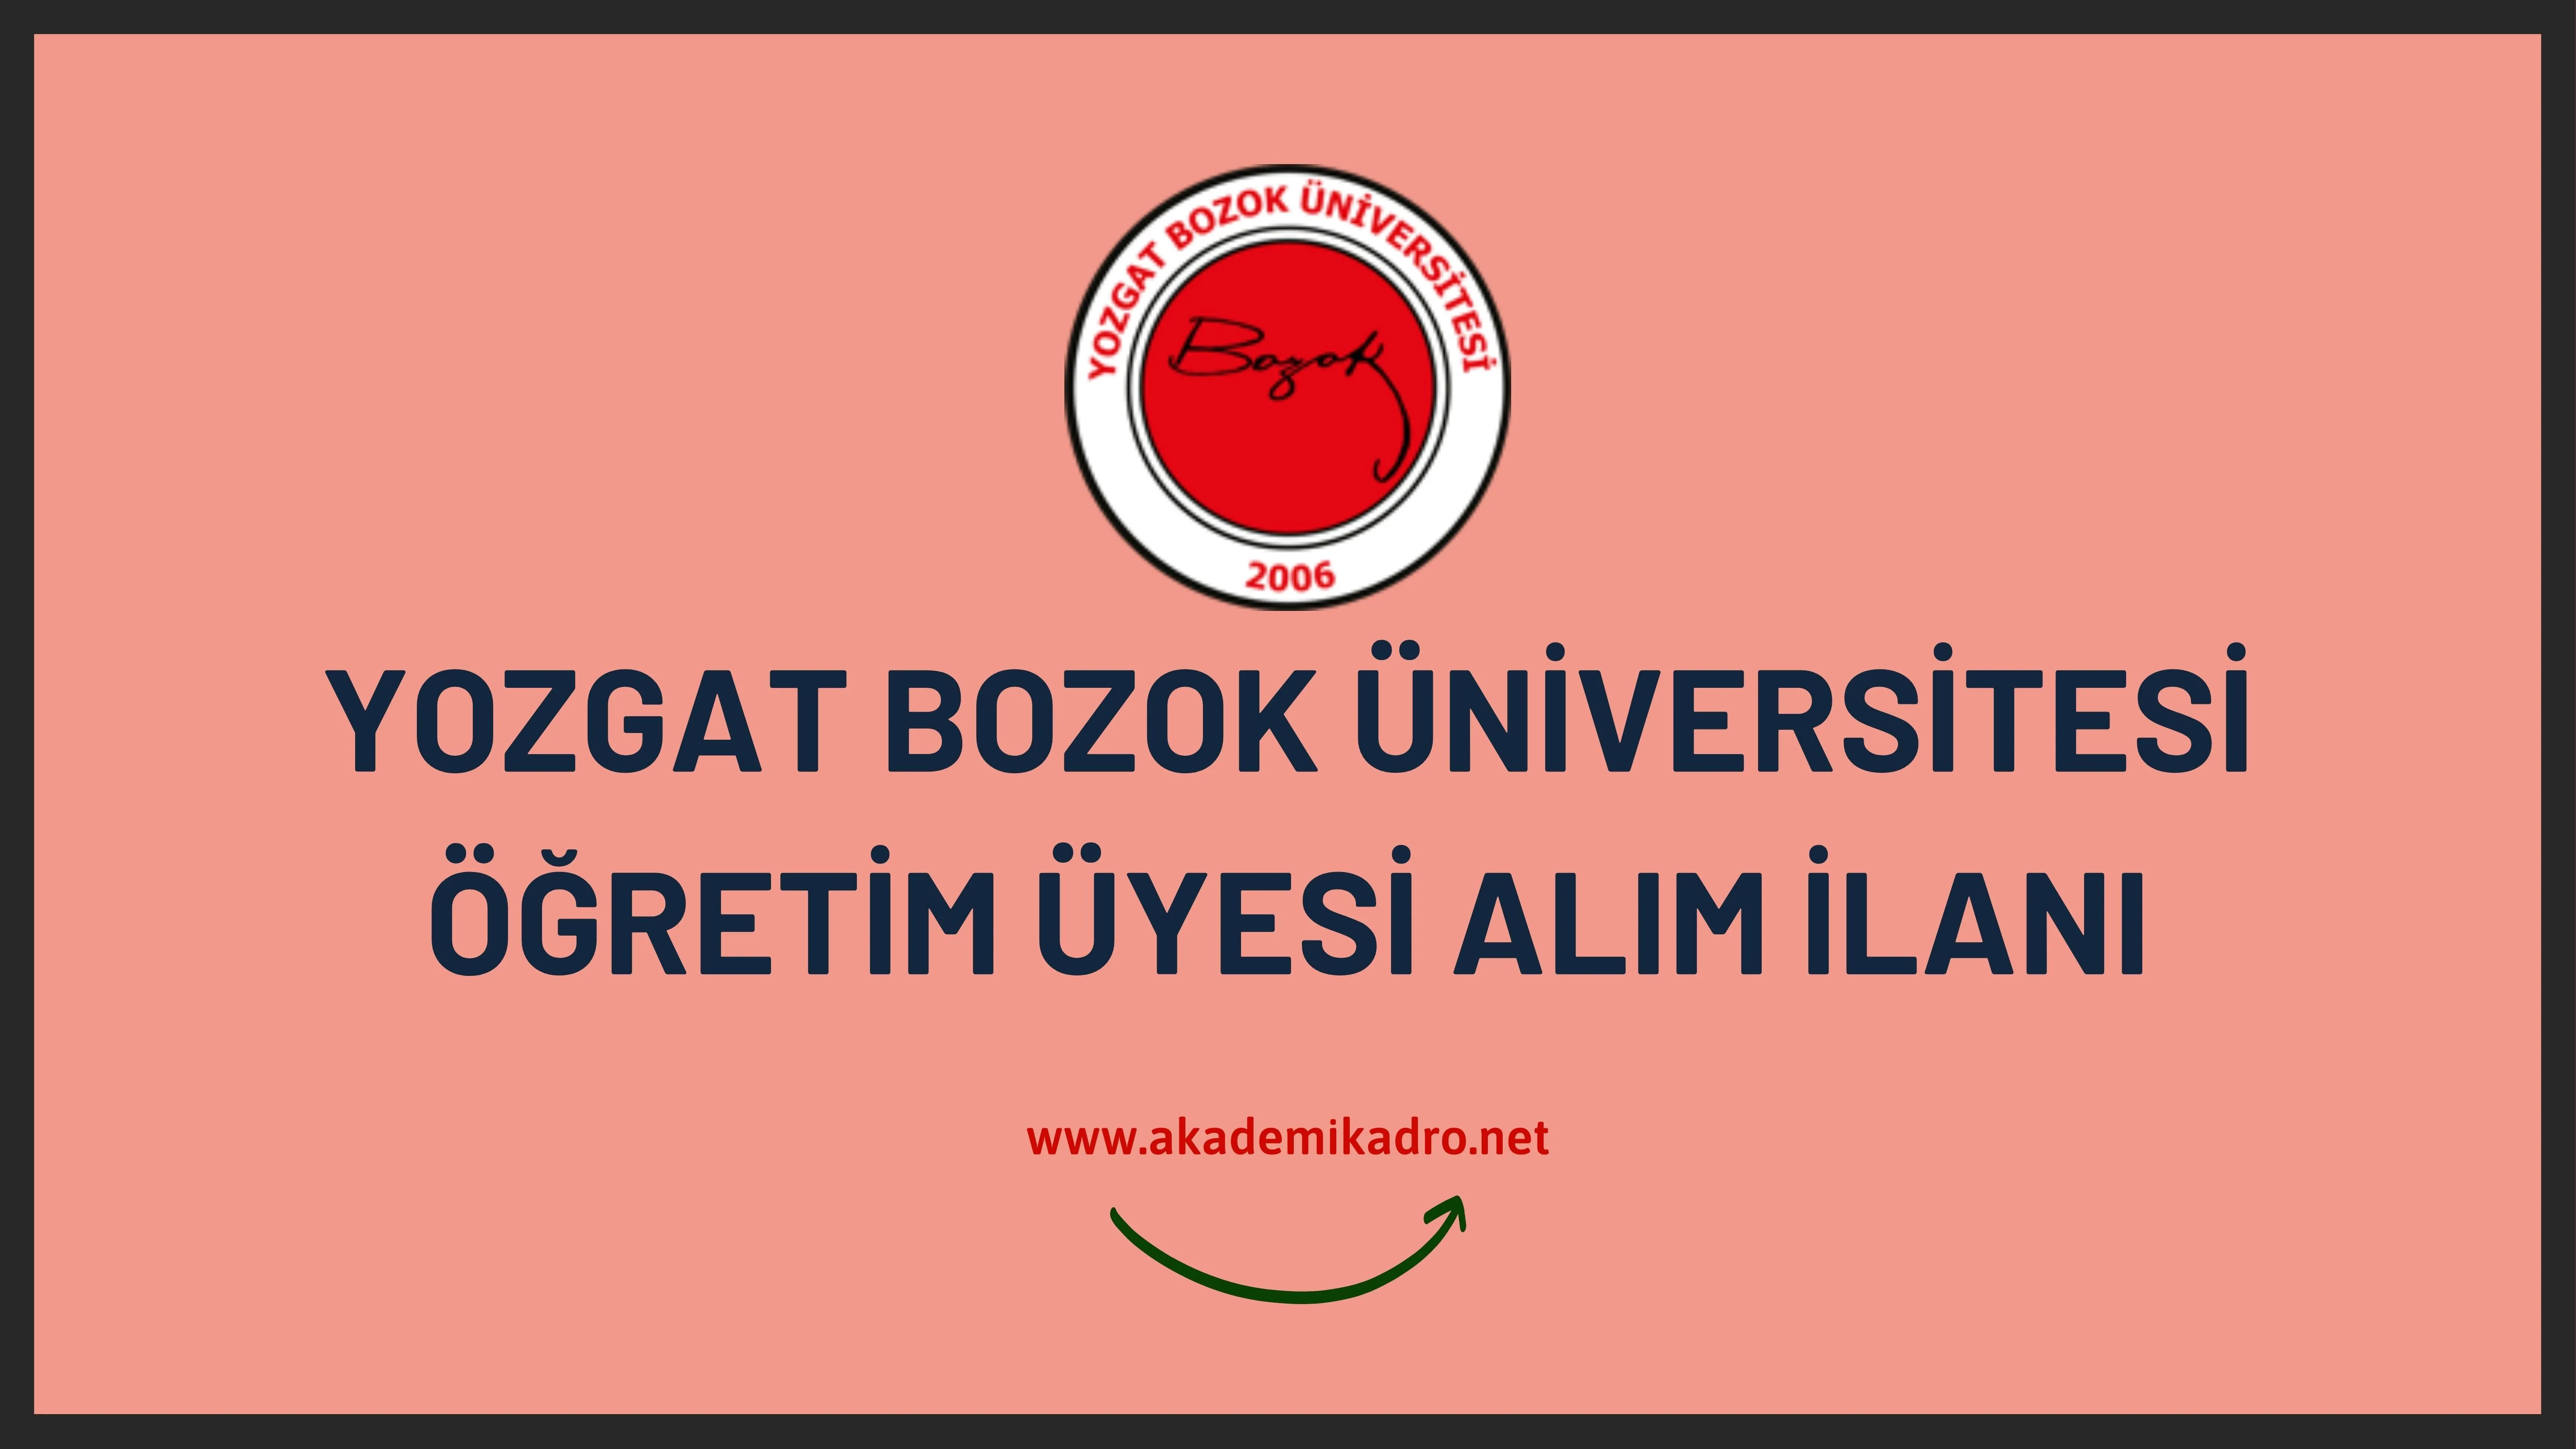 Yozgat Bozok Üniversitesi 4 Öğretim üyesi alacak.